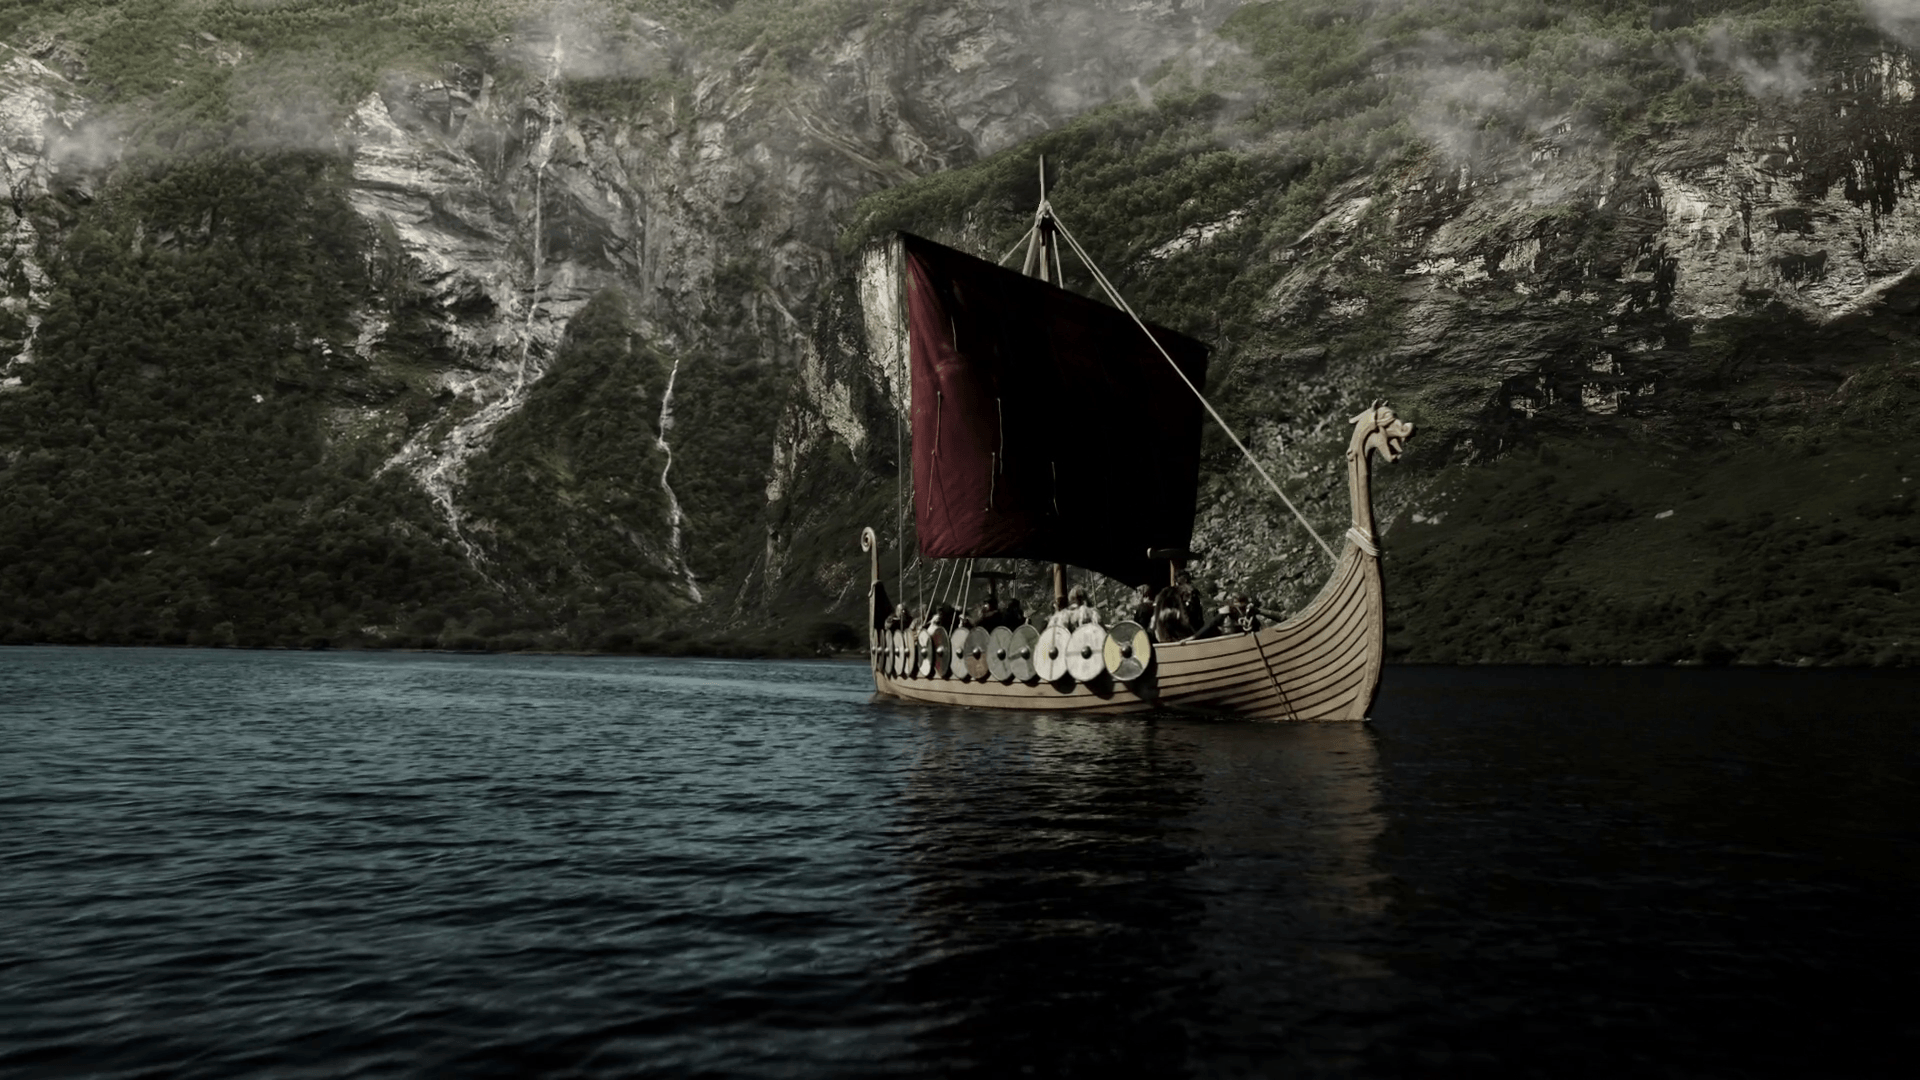 nordic ship image. Red sail of a Viking ship wallpaper and image, picture. Viking wallpaper, Viking ship, Viking image